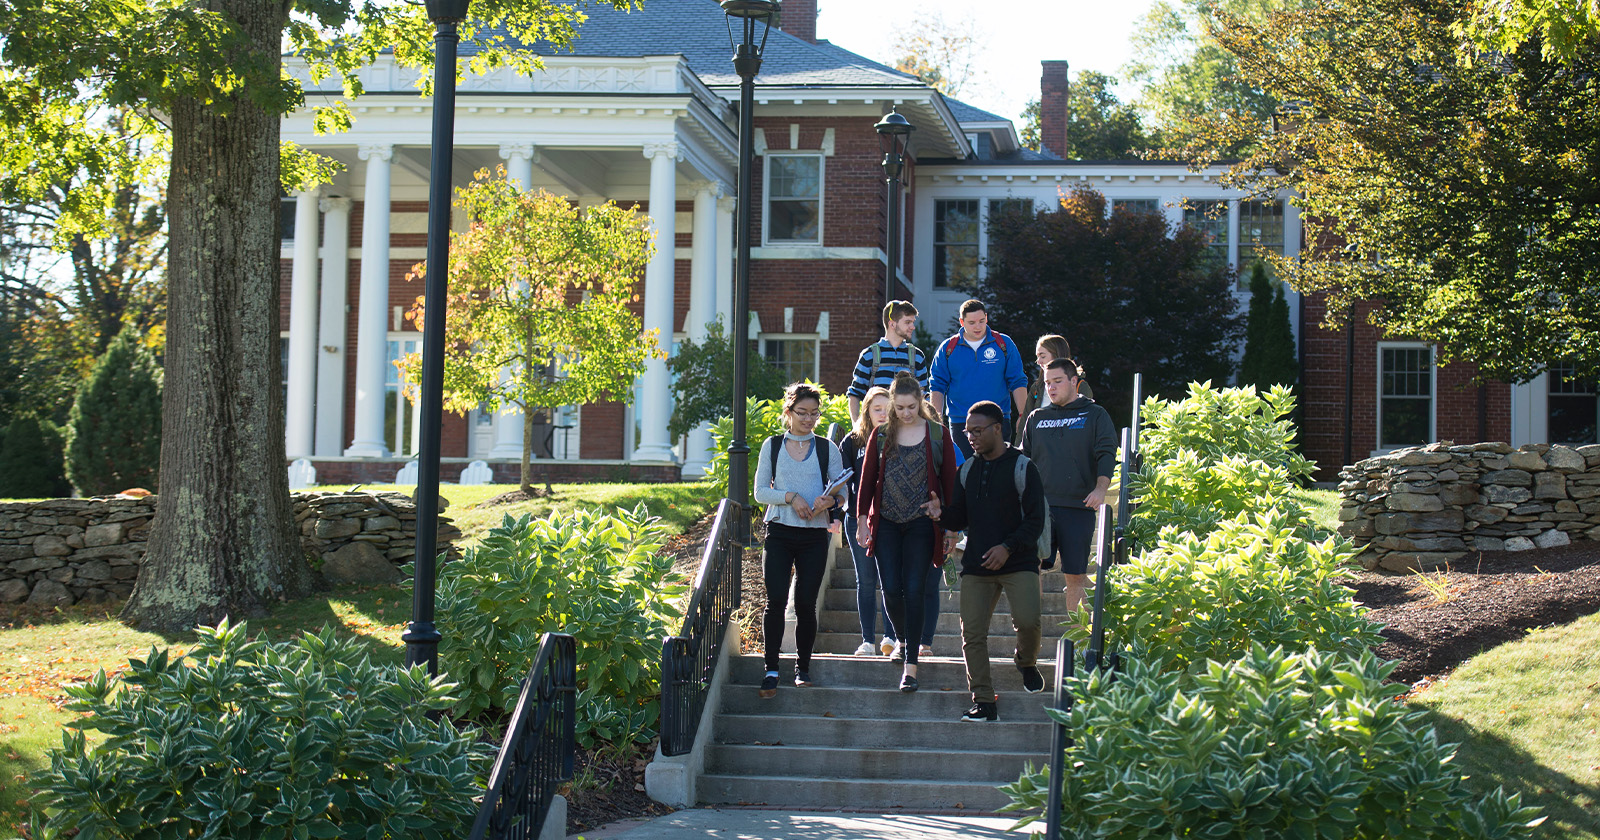 Students having fun, while walking around campus.